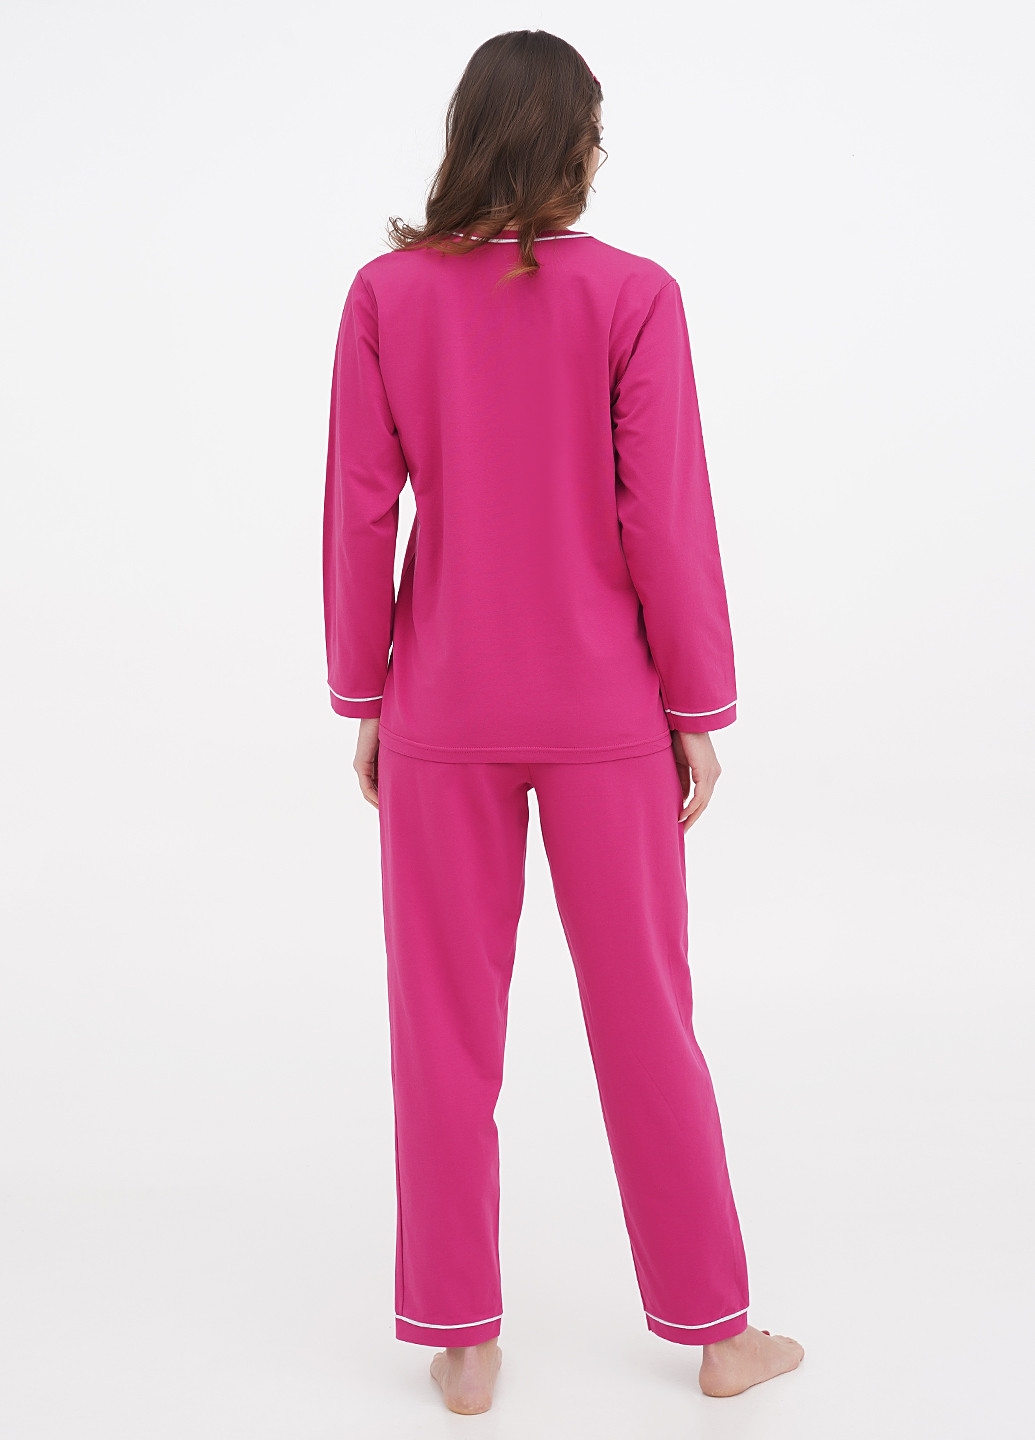 Малиновая всесезон пижама (лонгслив, брюки, маска для сна) лонгслив + брюки Lucci